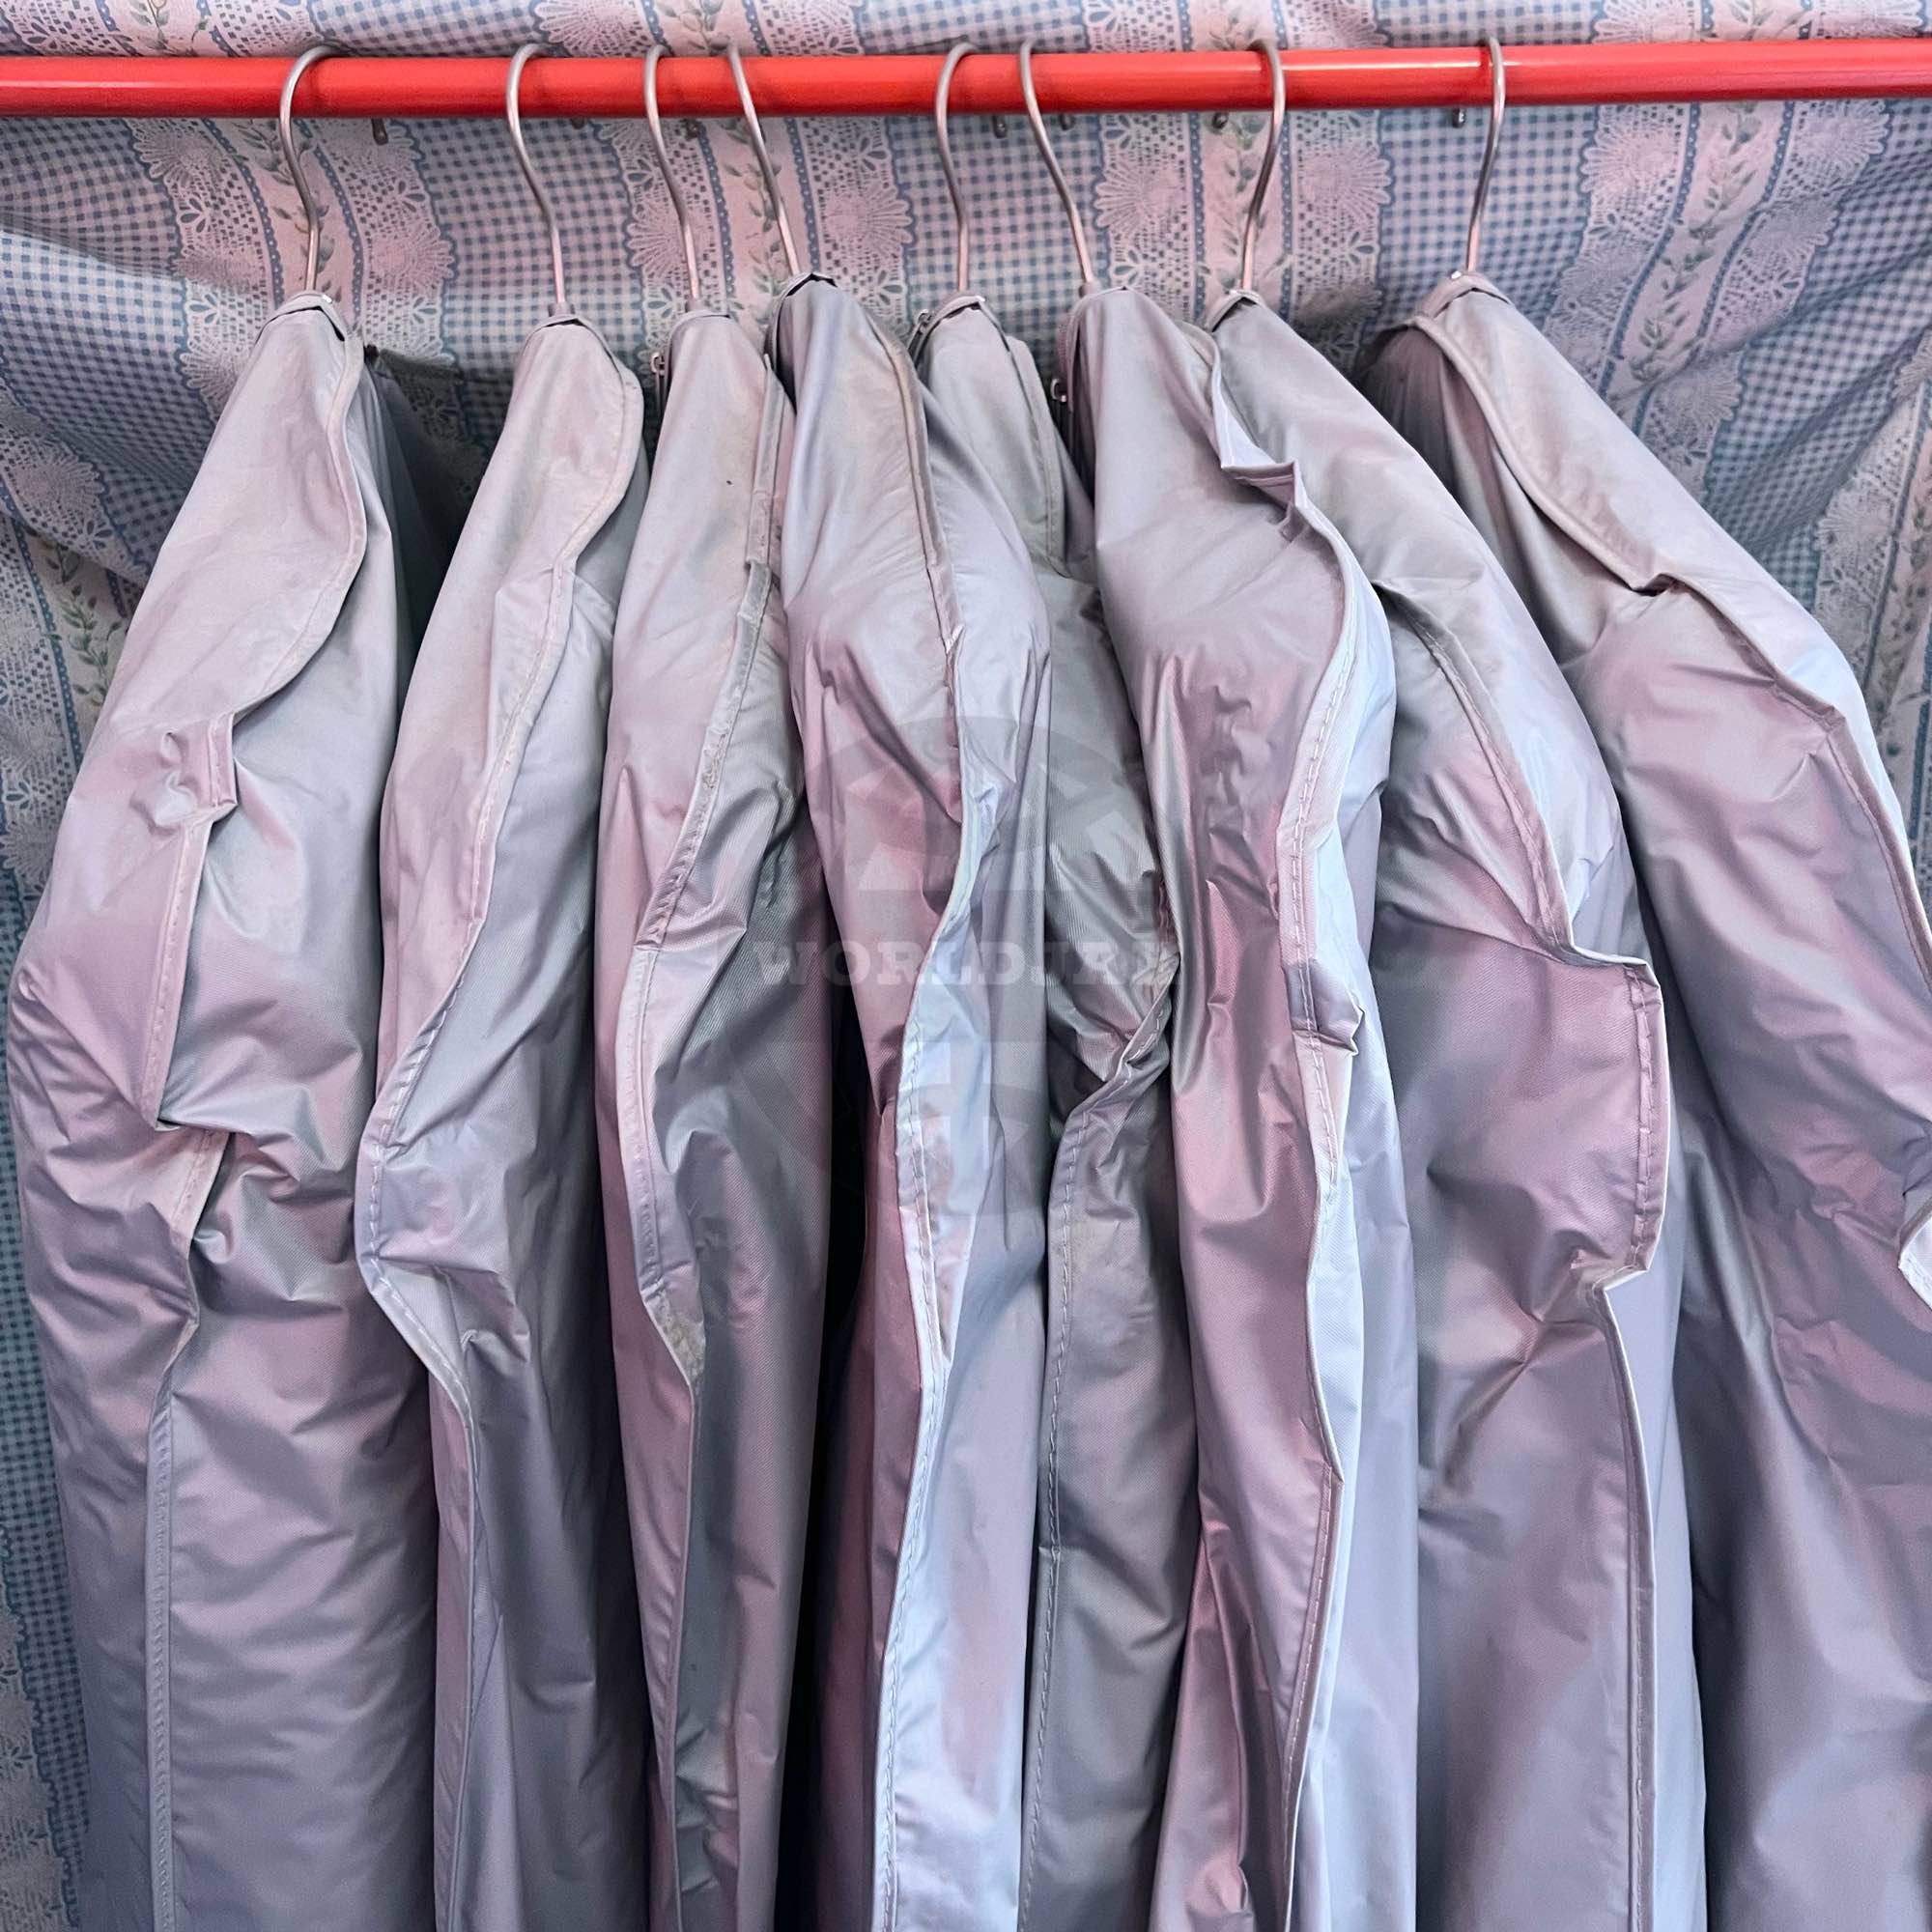 อุปกรณ์จัดเก็บเสื้อผ้า ถุงใส่สูท ถุงใส่เสื้อ ถุงคลุมเสื้อกันฝุ่น หนาอย่างดี 67x99 ซม. (สินค้าพร้อมส่ง)